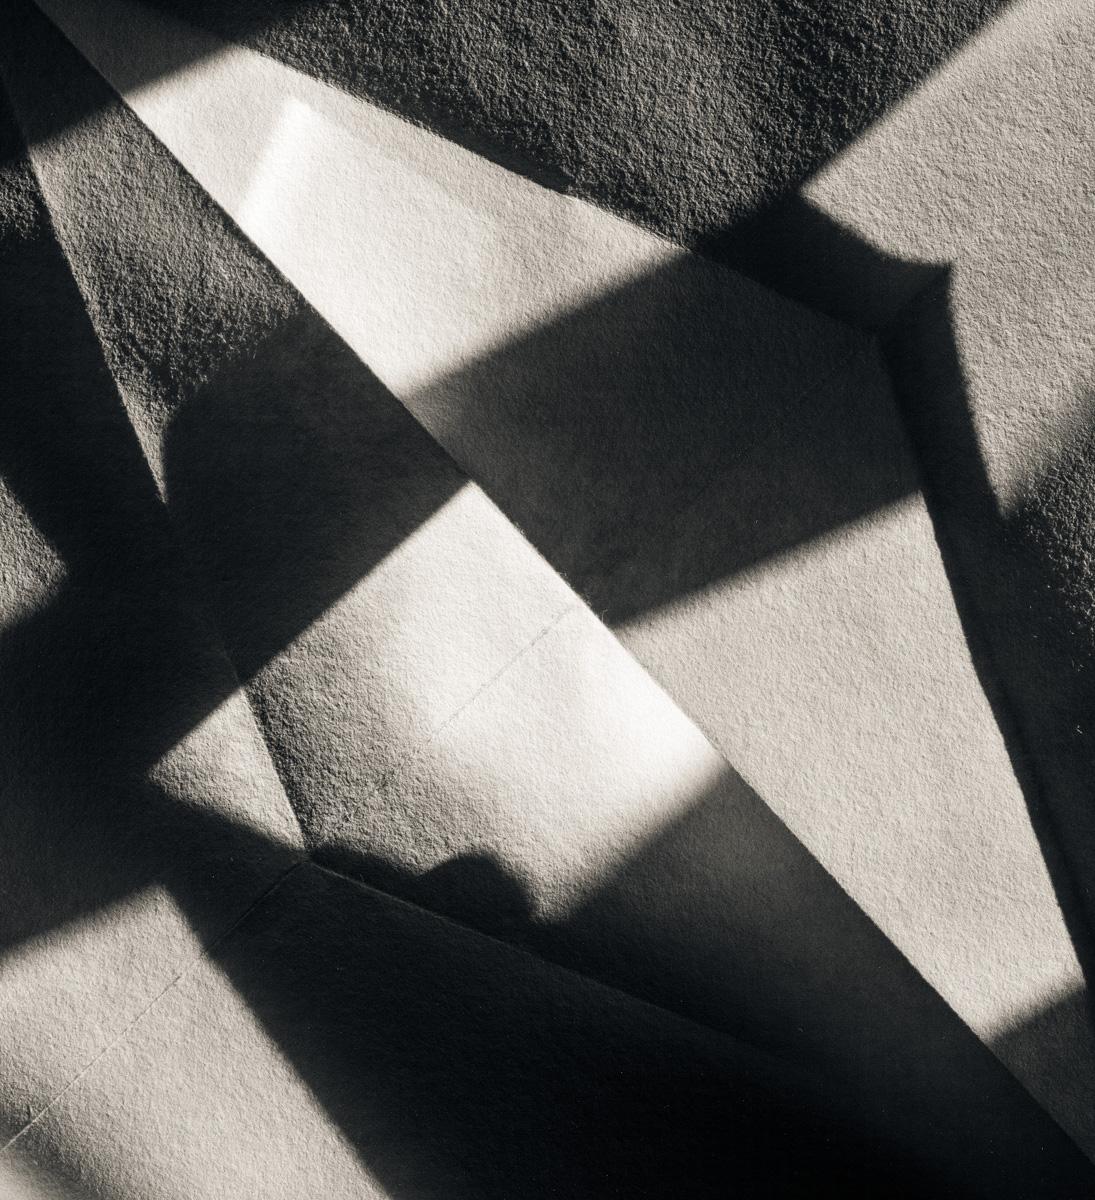  Abstrakte abstrakte Fotografie Schwarz-Weiß - Origami-Blatt #15 